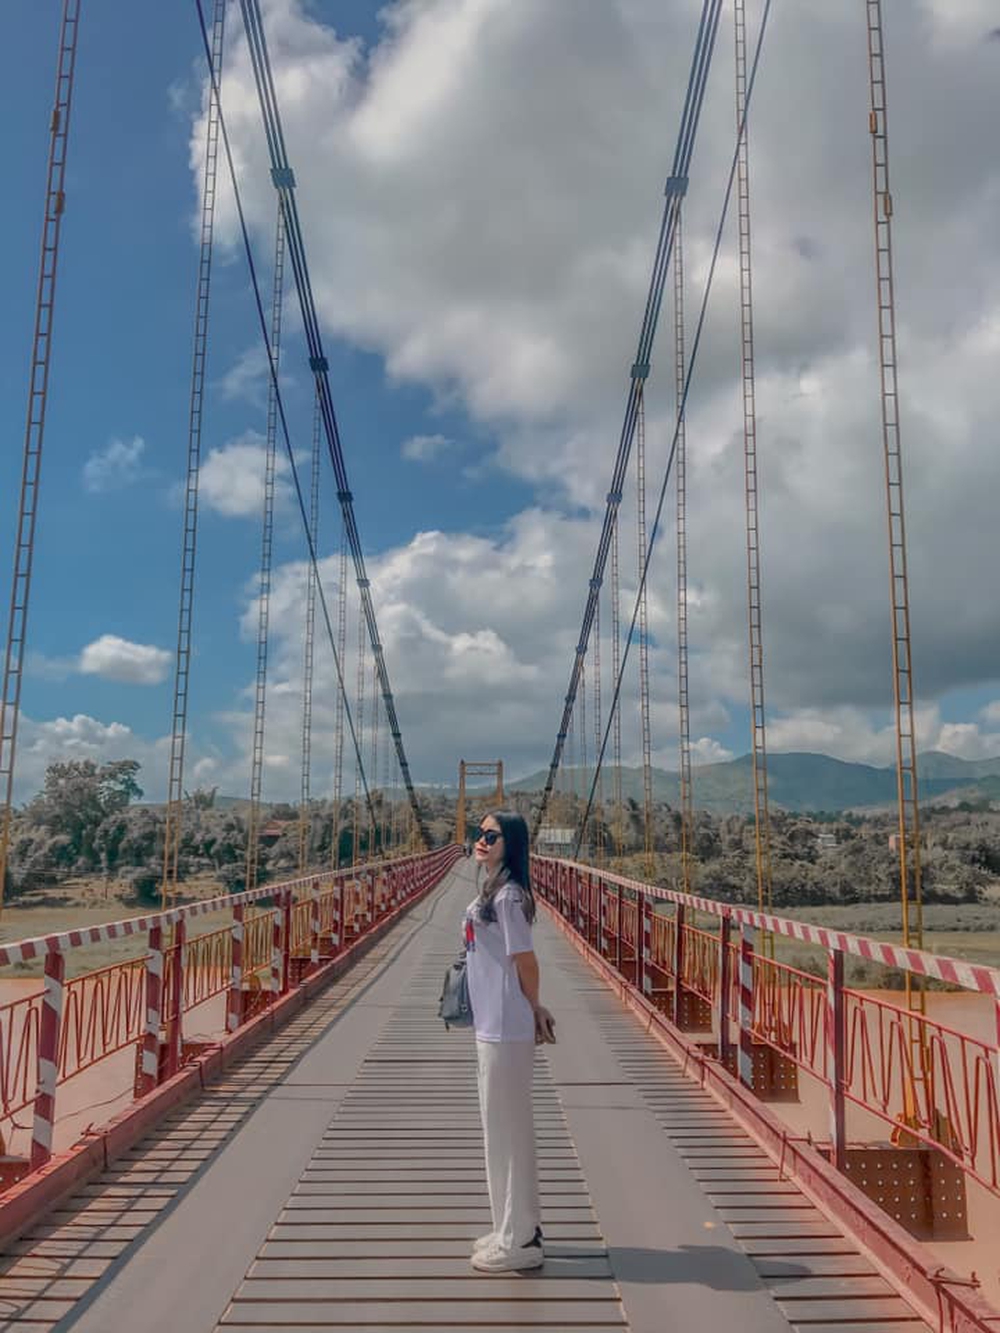 4 cây cầu treo siêu đẹp ở Việt Nam: Cứ đến là “lụm ảnh mỏi tay” nhưng lại không dành cho người yếu tim - Ảnh 11.